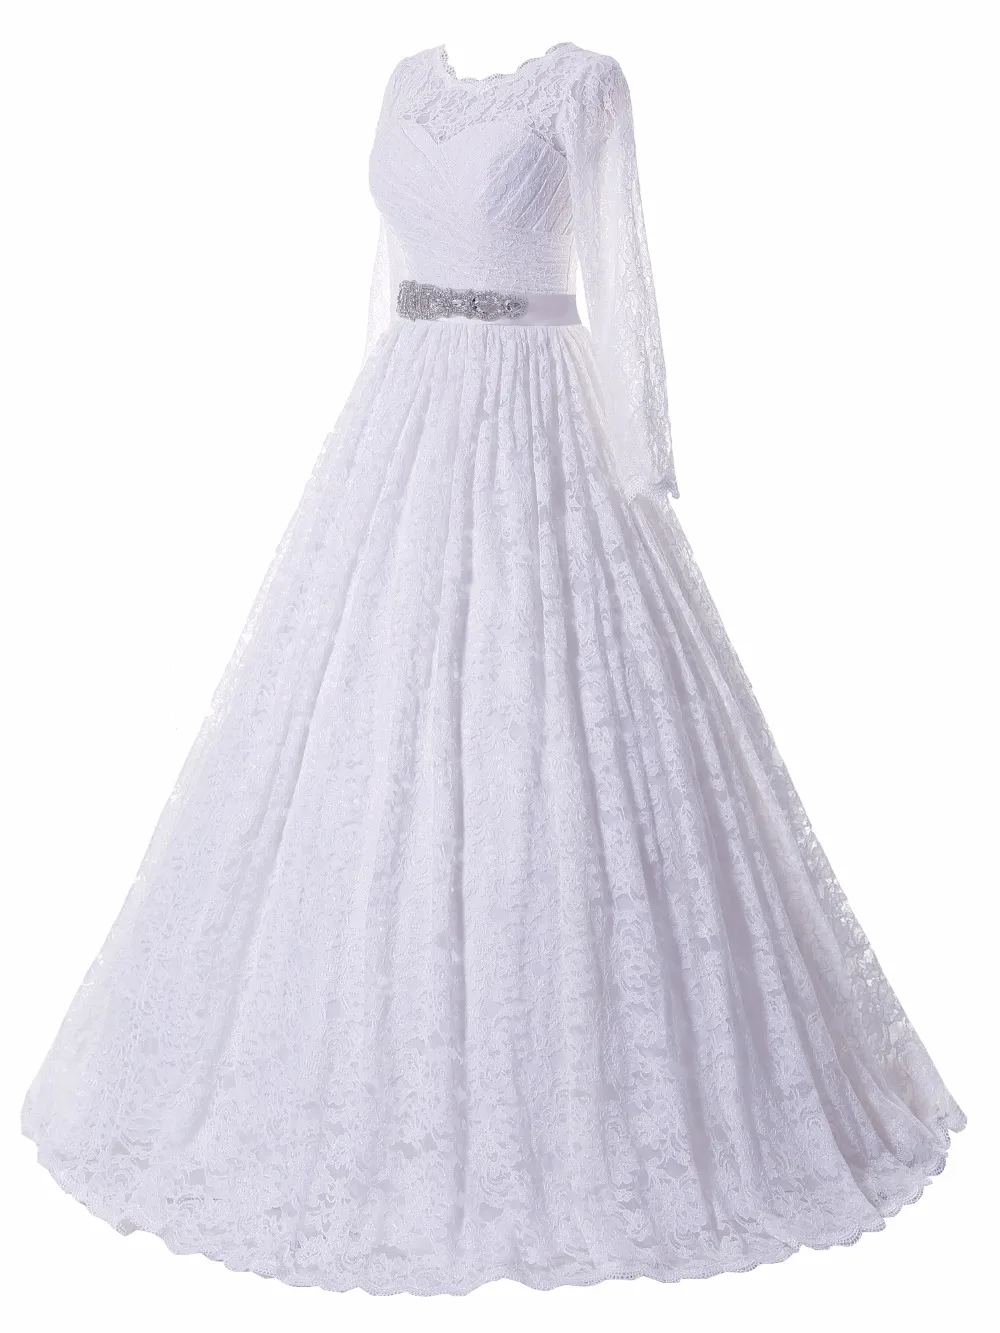 Solovedress, кружевное платье с круглым вырезом, настоящая фотография, Pus, размер совок, длинный рукав, свадебное платье, бальное платье, свадебное платье с поясом SLDW90099